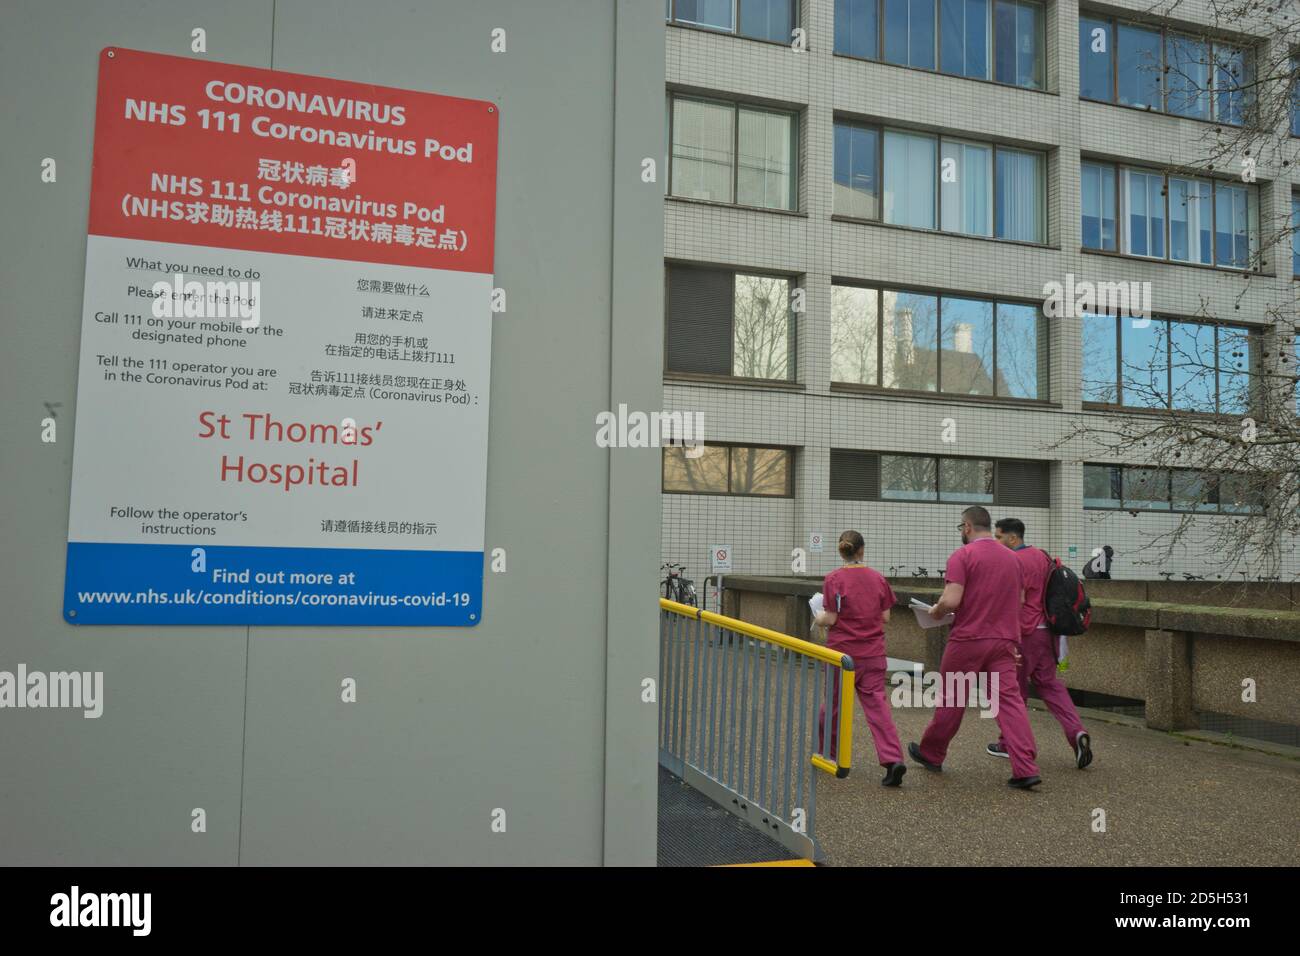 Le personnel médical passe devant la cosse du coronavirus NHS à l'hôpital St. Thomas de Londres, en Angleterre, au Royaume-Uni Banque D'Images